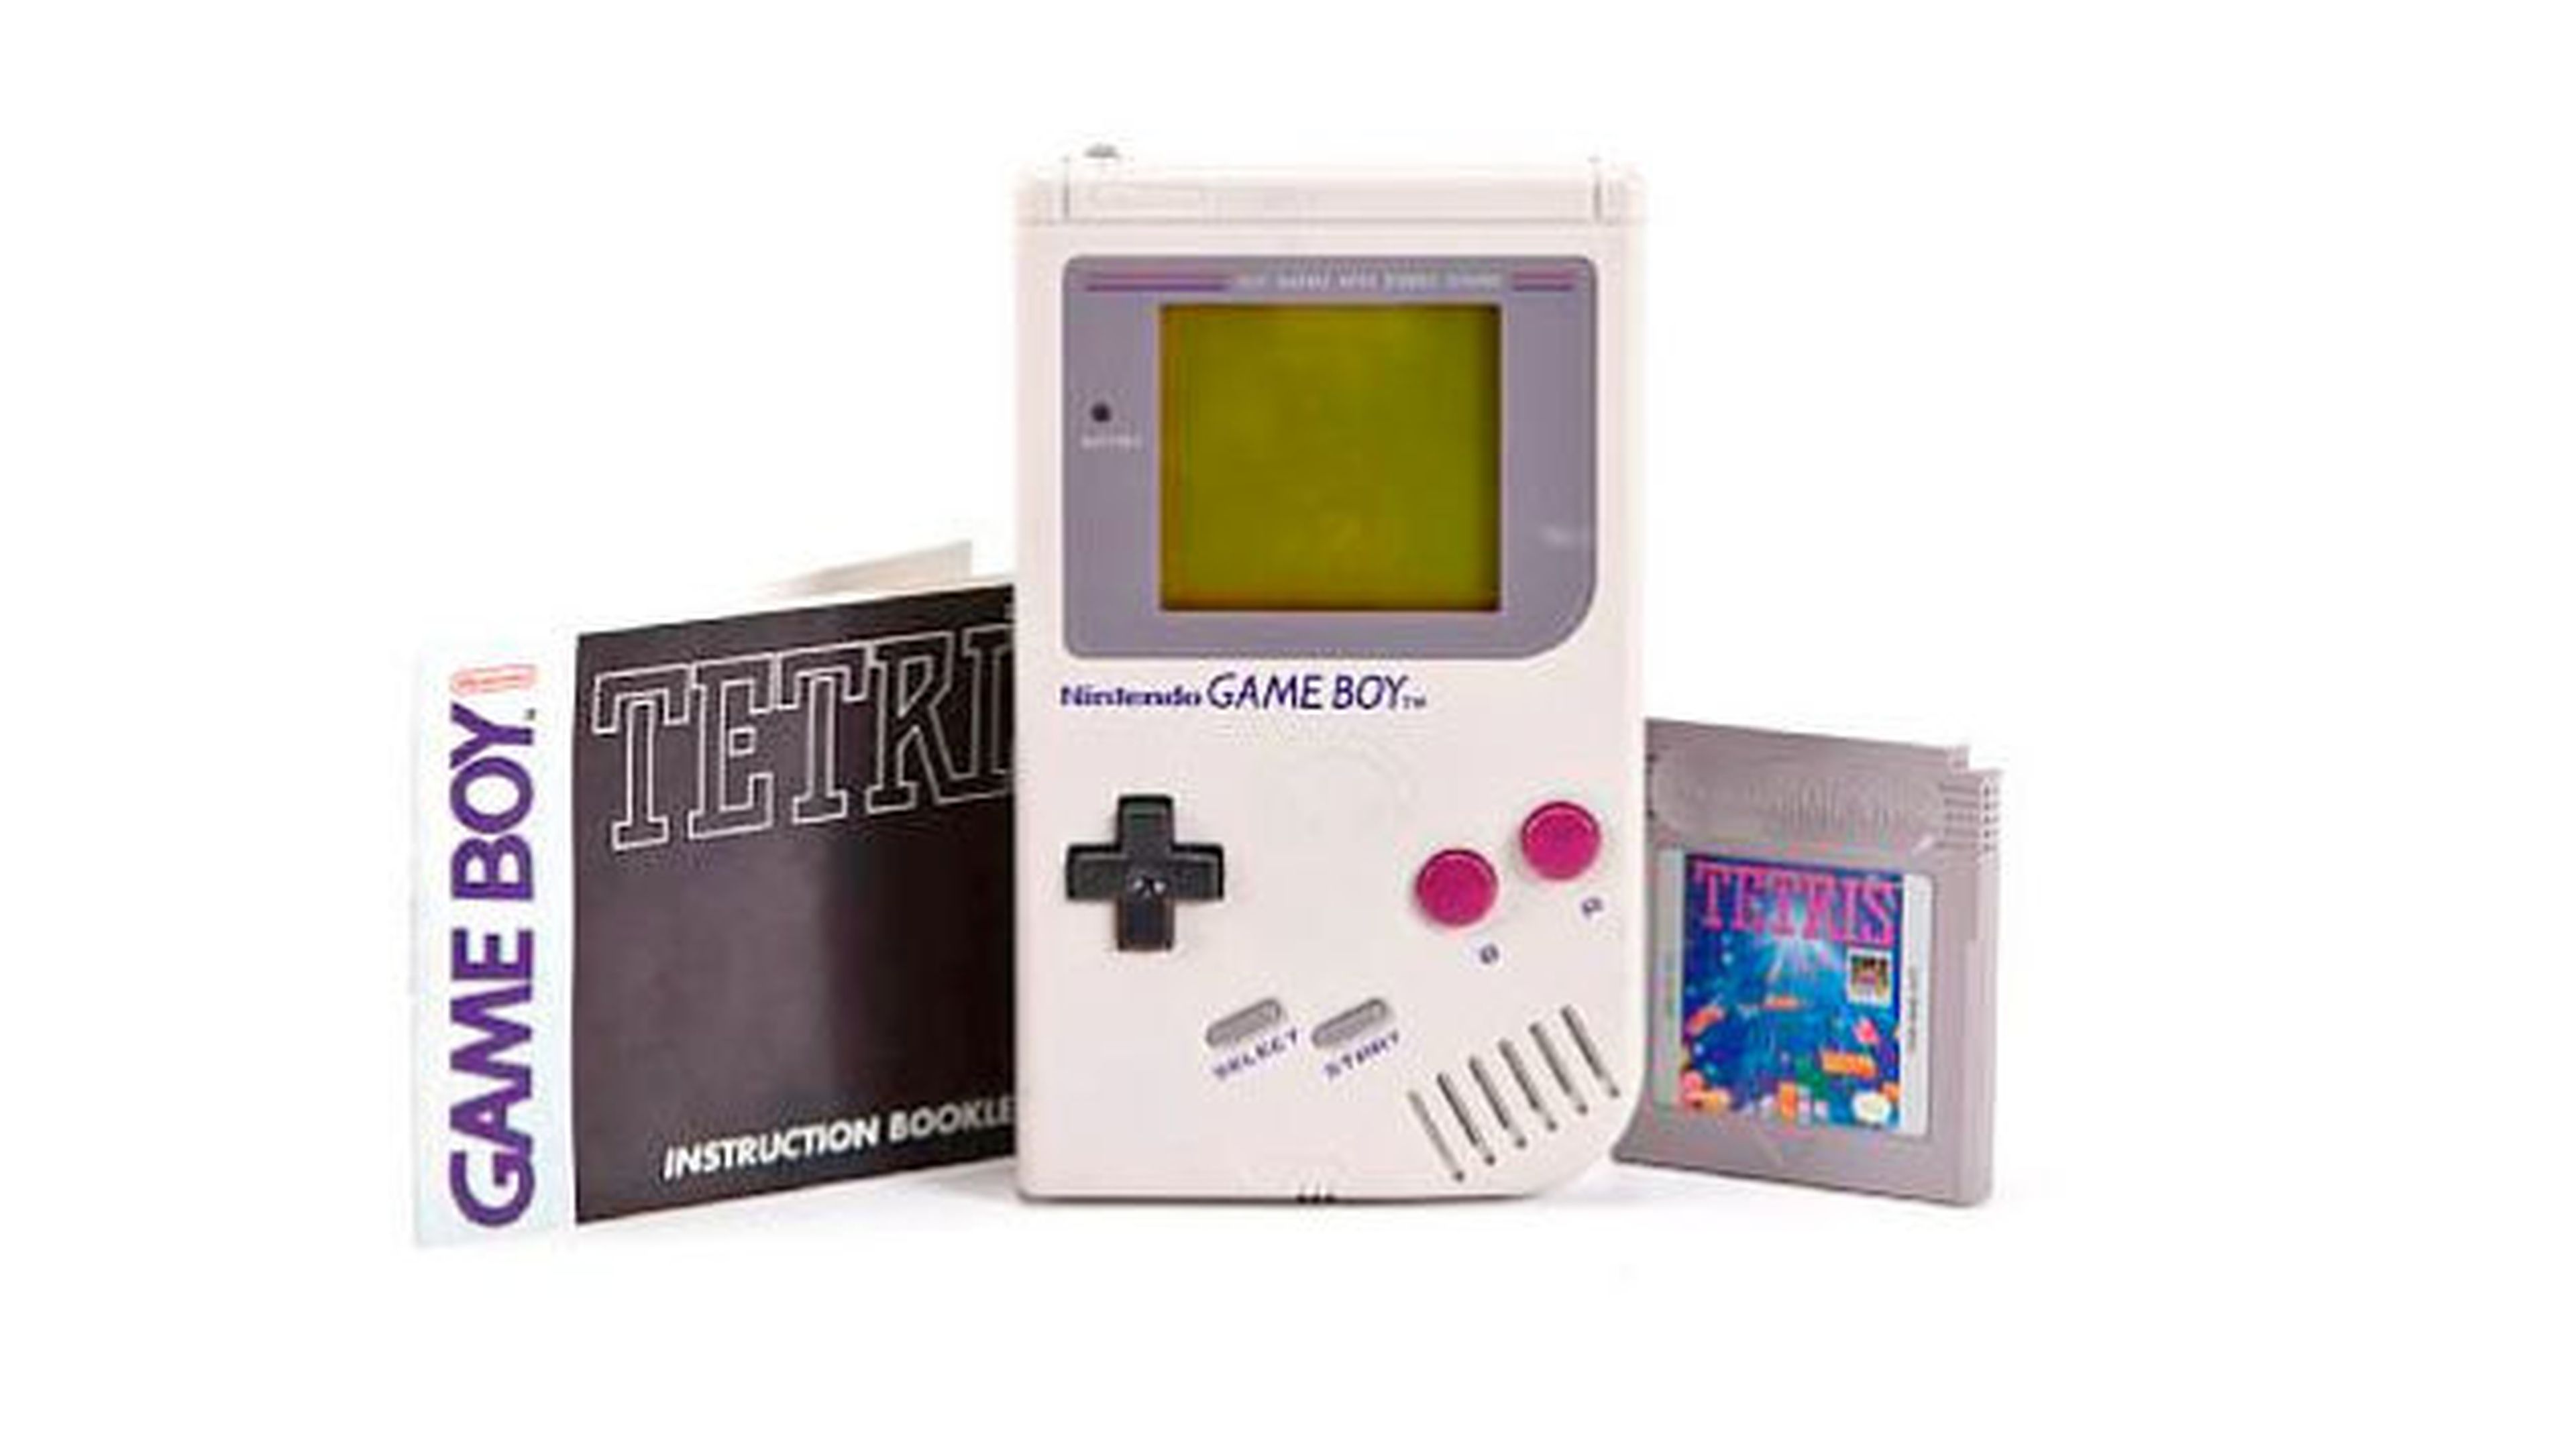 Game Boy cumple 25 años: 5 curiosidades